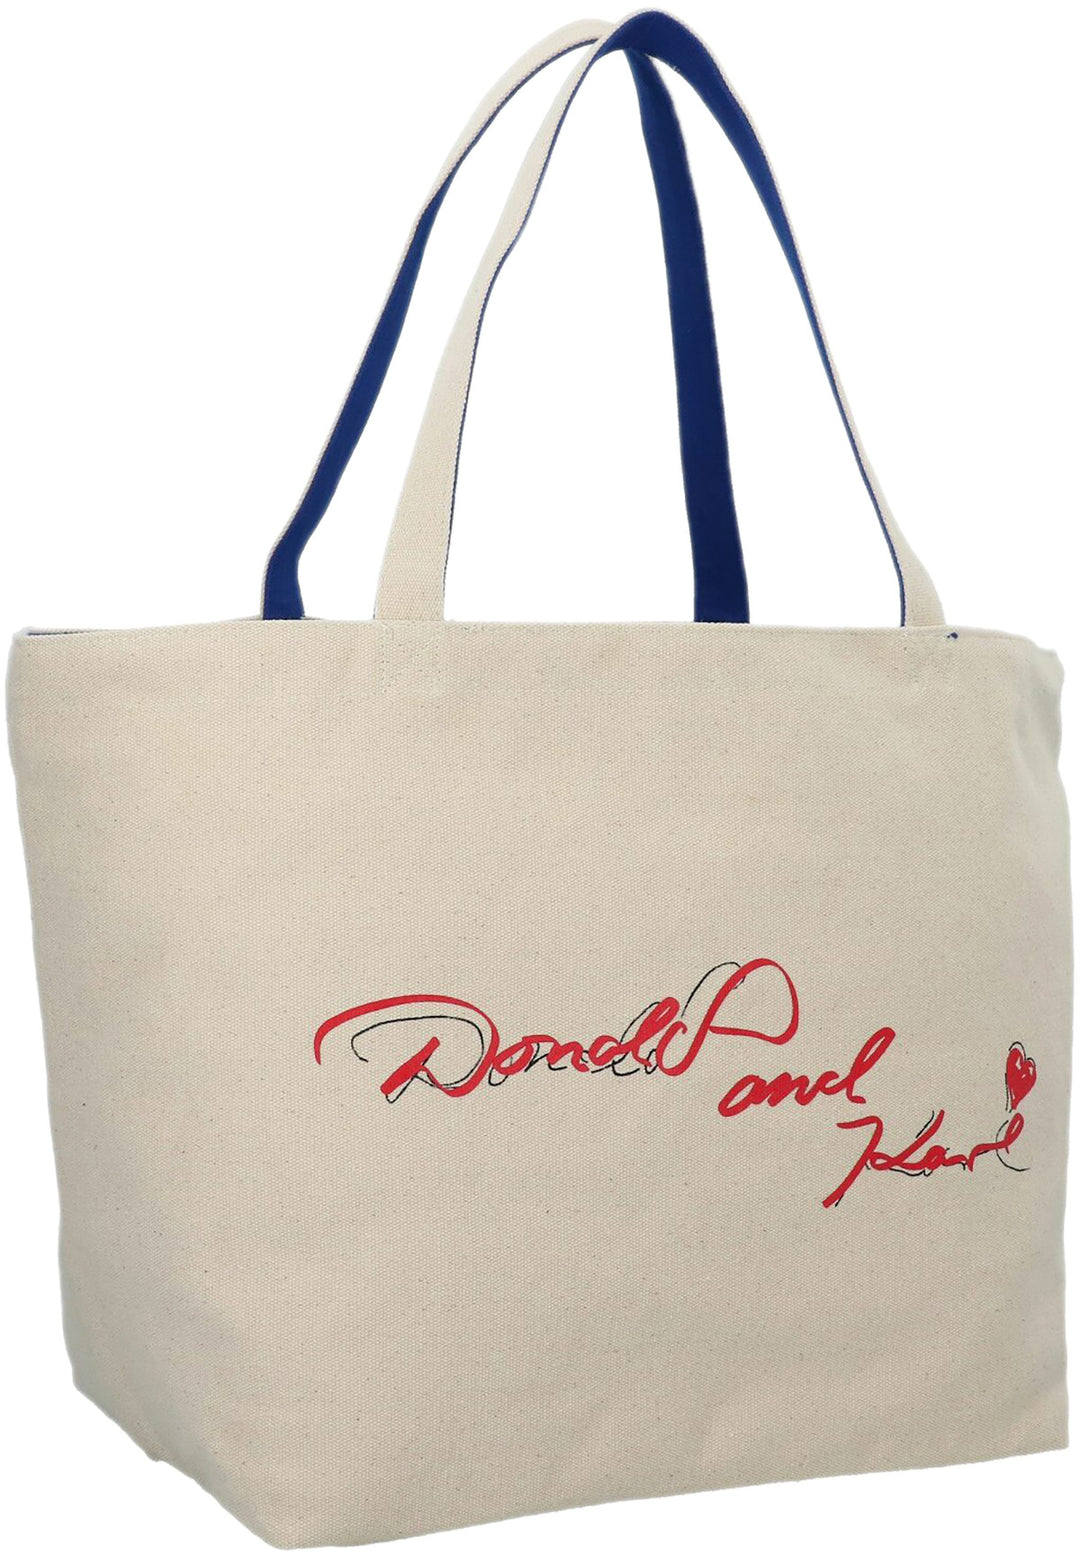 Karl Lagerfeld x Disney Logo Reversible Tote Bag - Farfetch